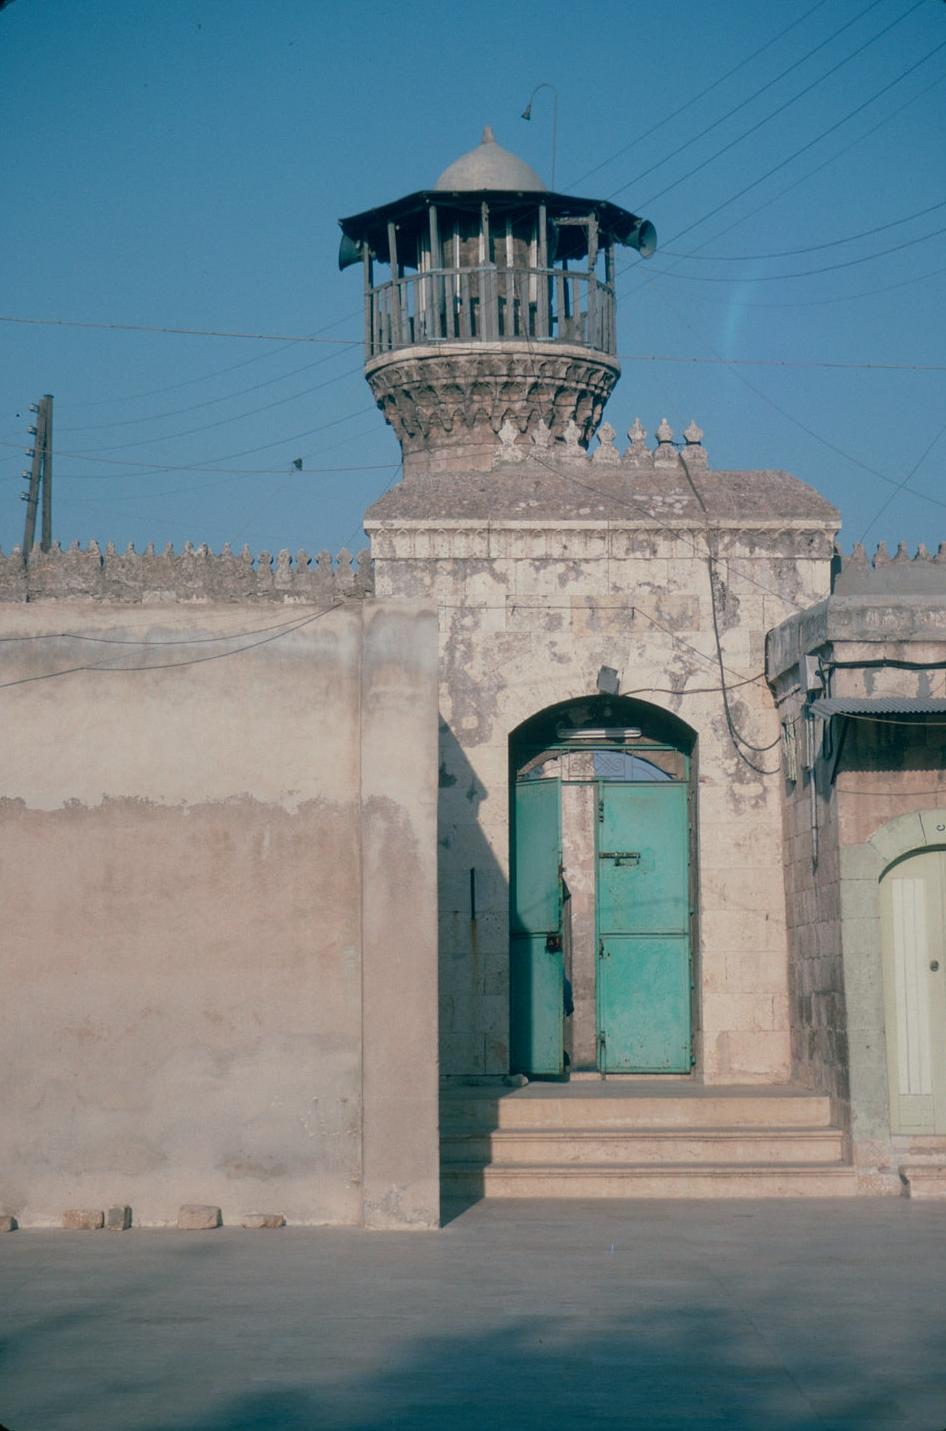 Entrance gate with minaret